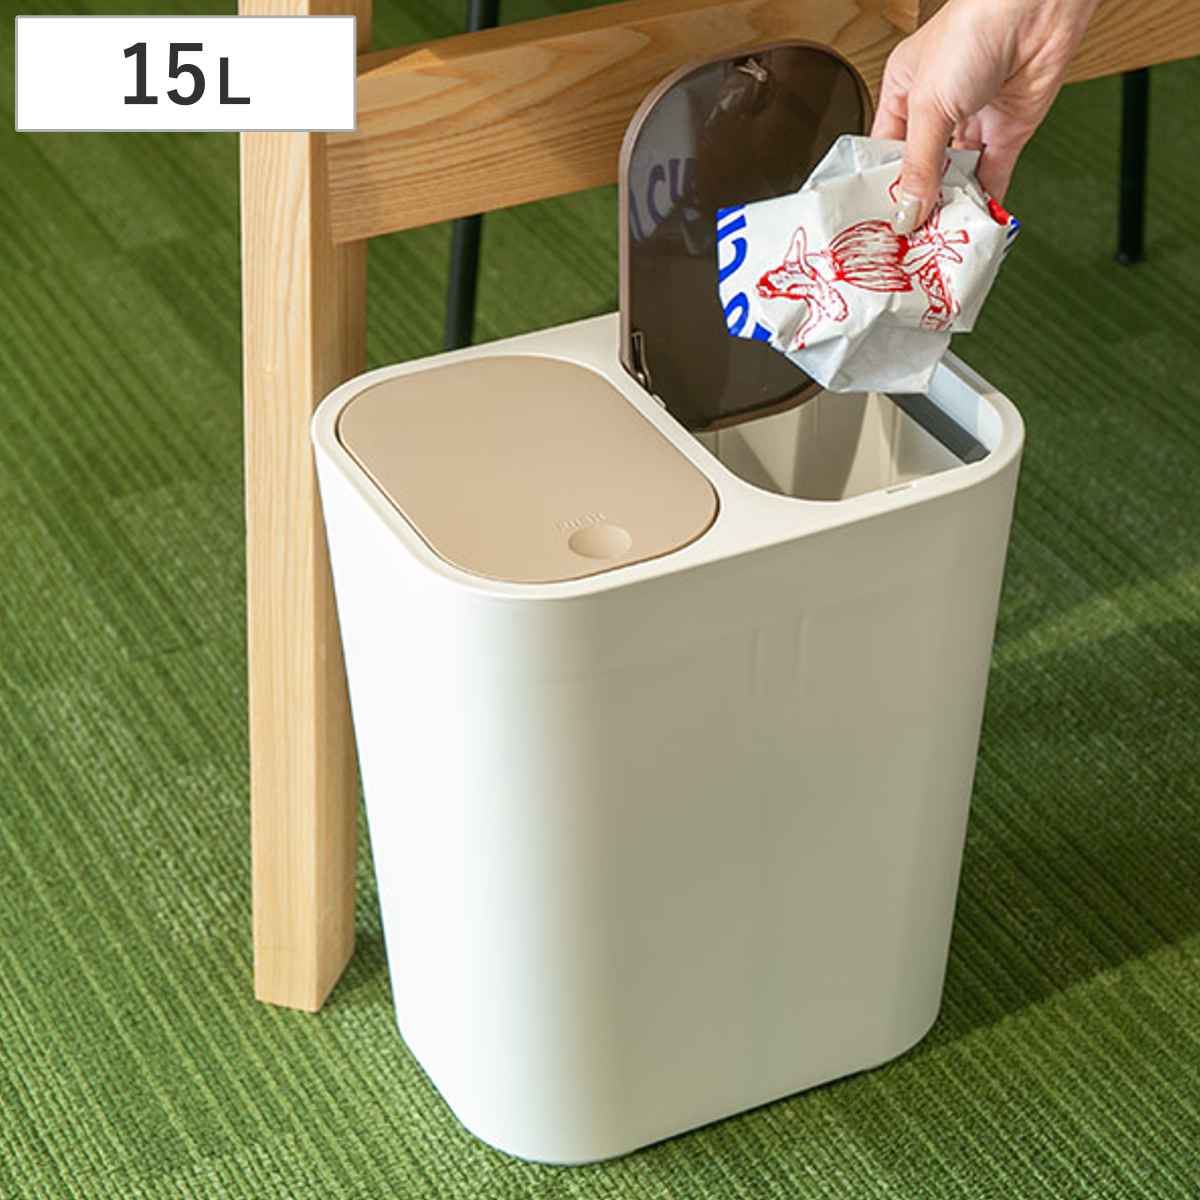 ゴミ箱 15L 分別 小型 小さい ごみ箱 ふた付き 部屋用 室内 分別ゴミ箱 ホワイト